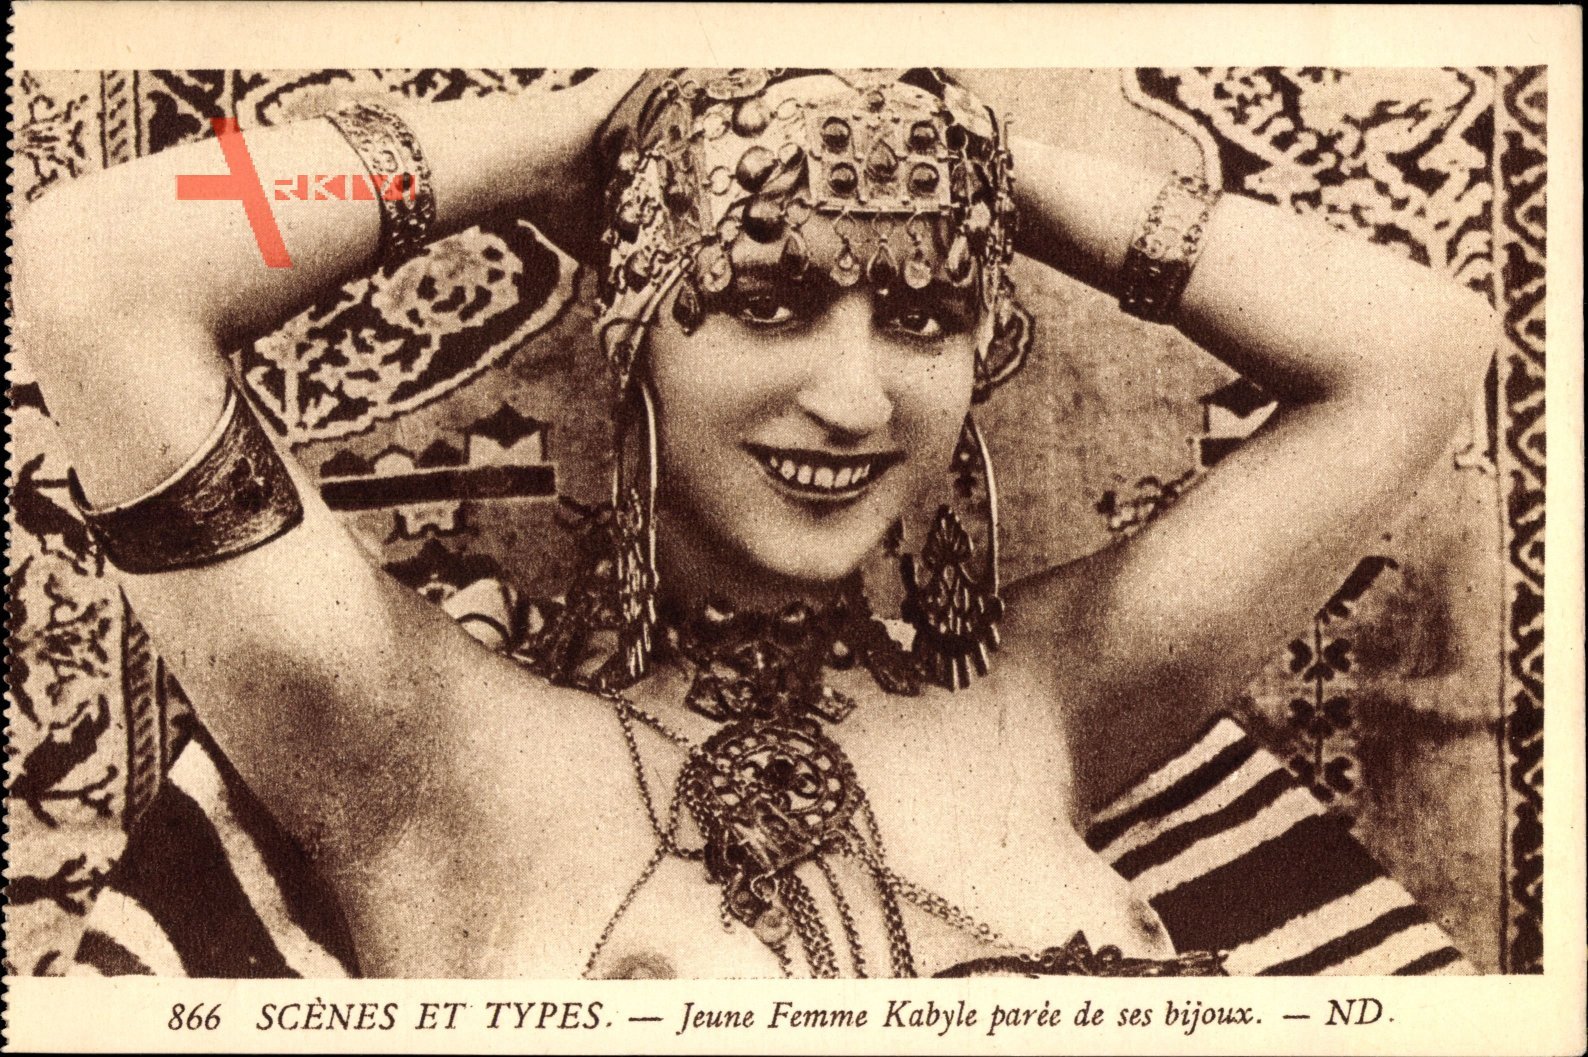 Scenes et Types, Jeune Femme Kabyle paree de ses bijous, Neurdein Frères 866